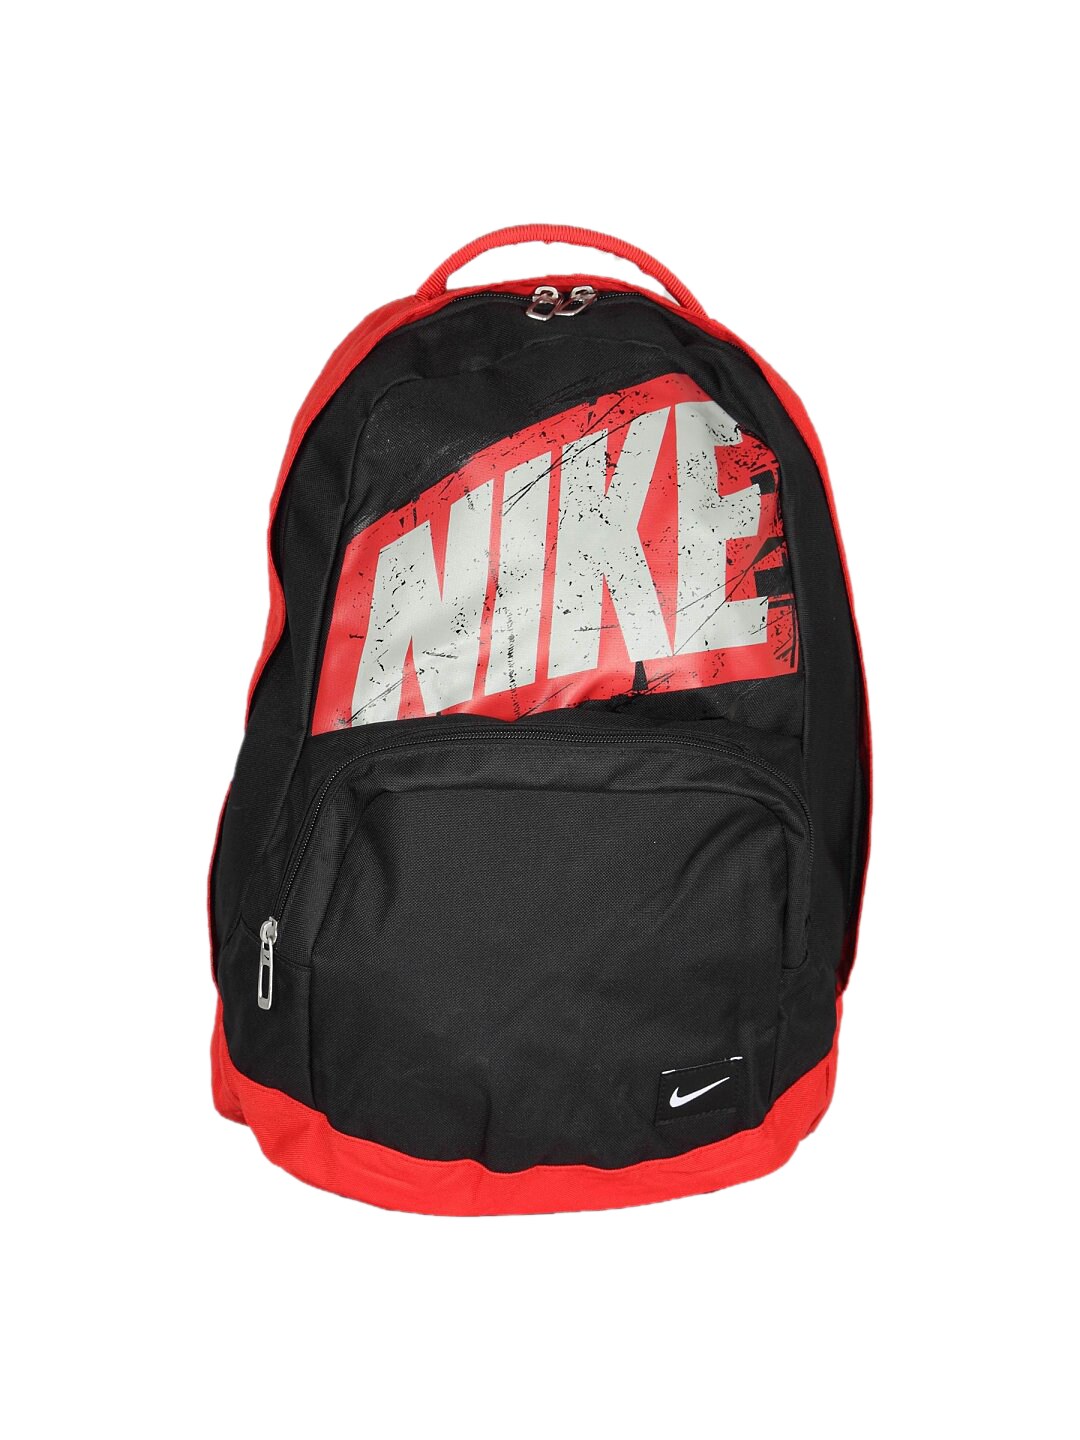 Nike Unisex Fundamen Red Backpack